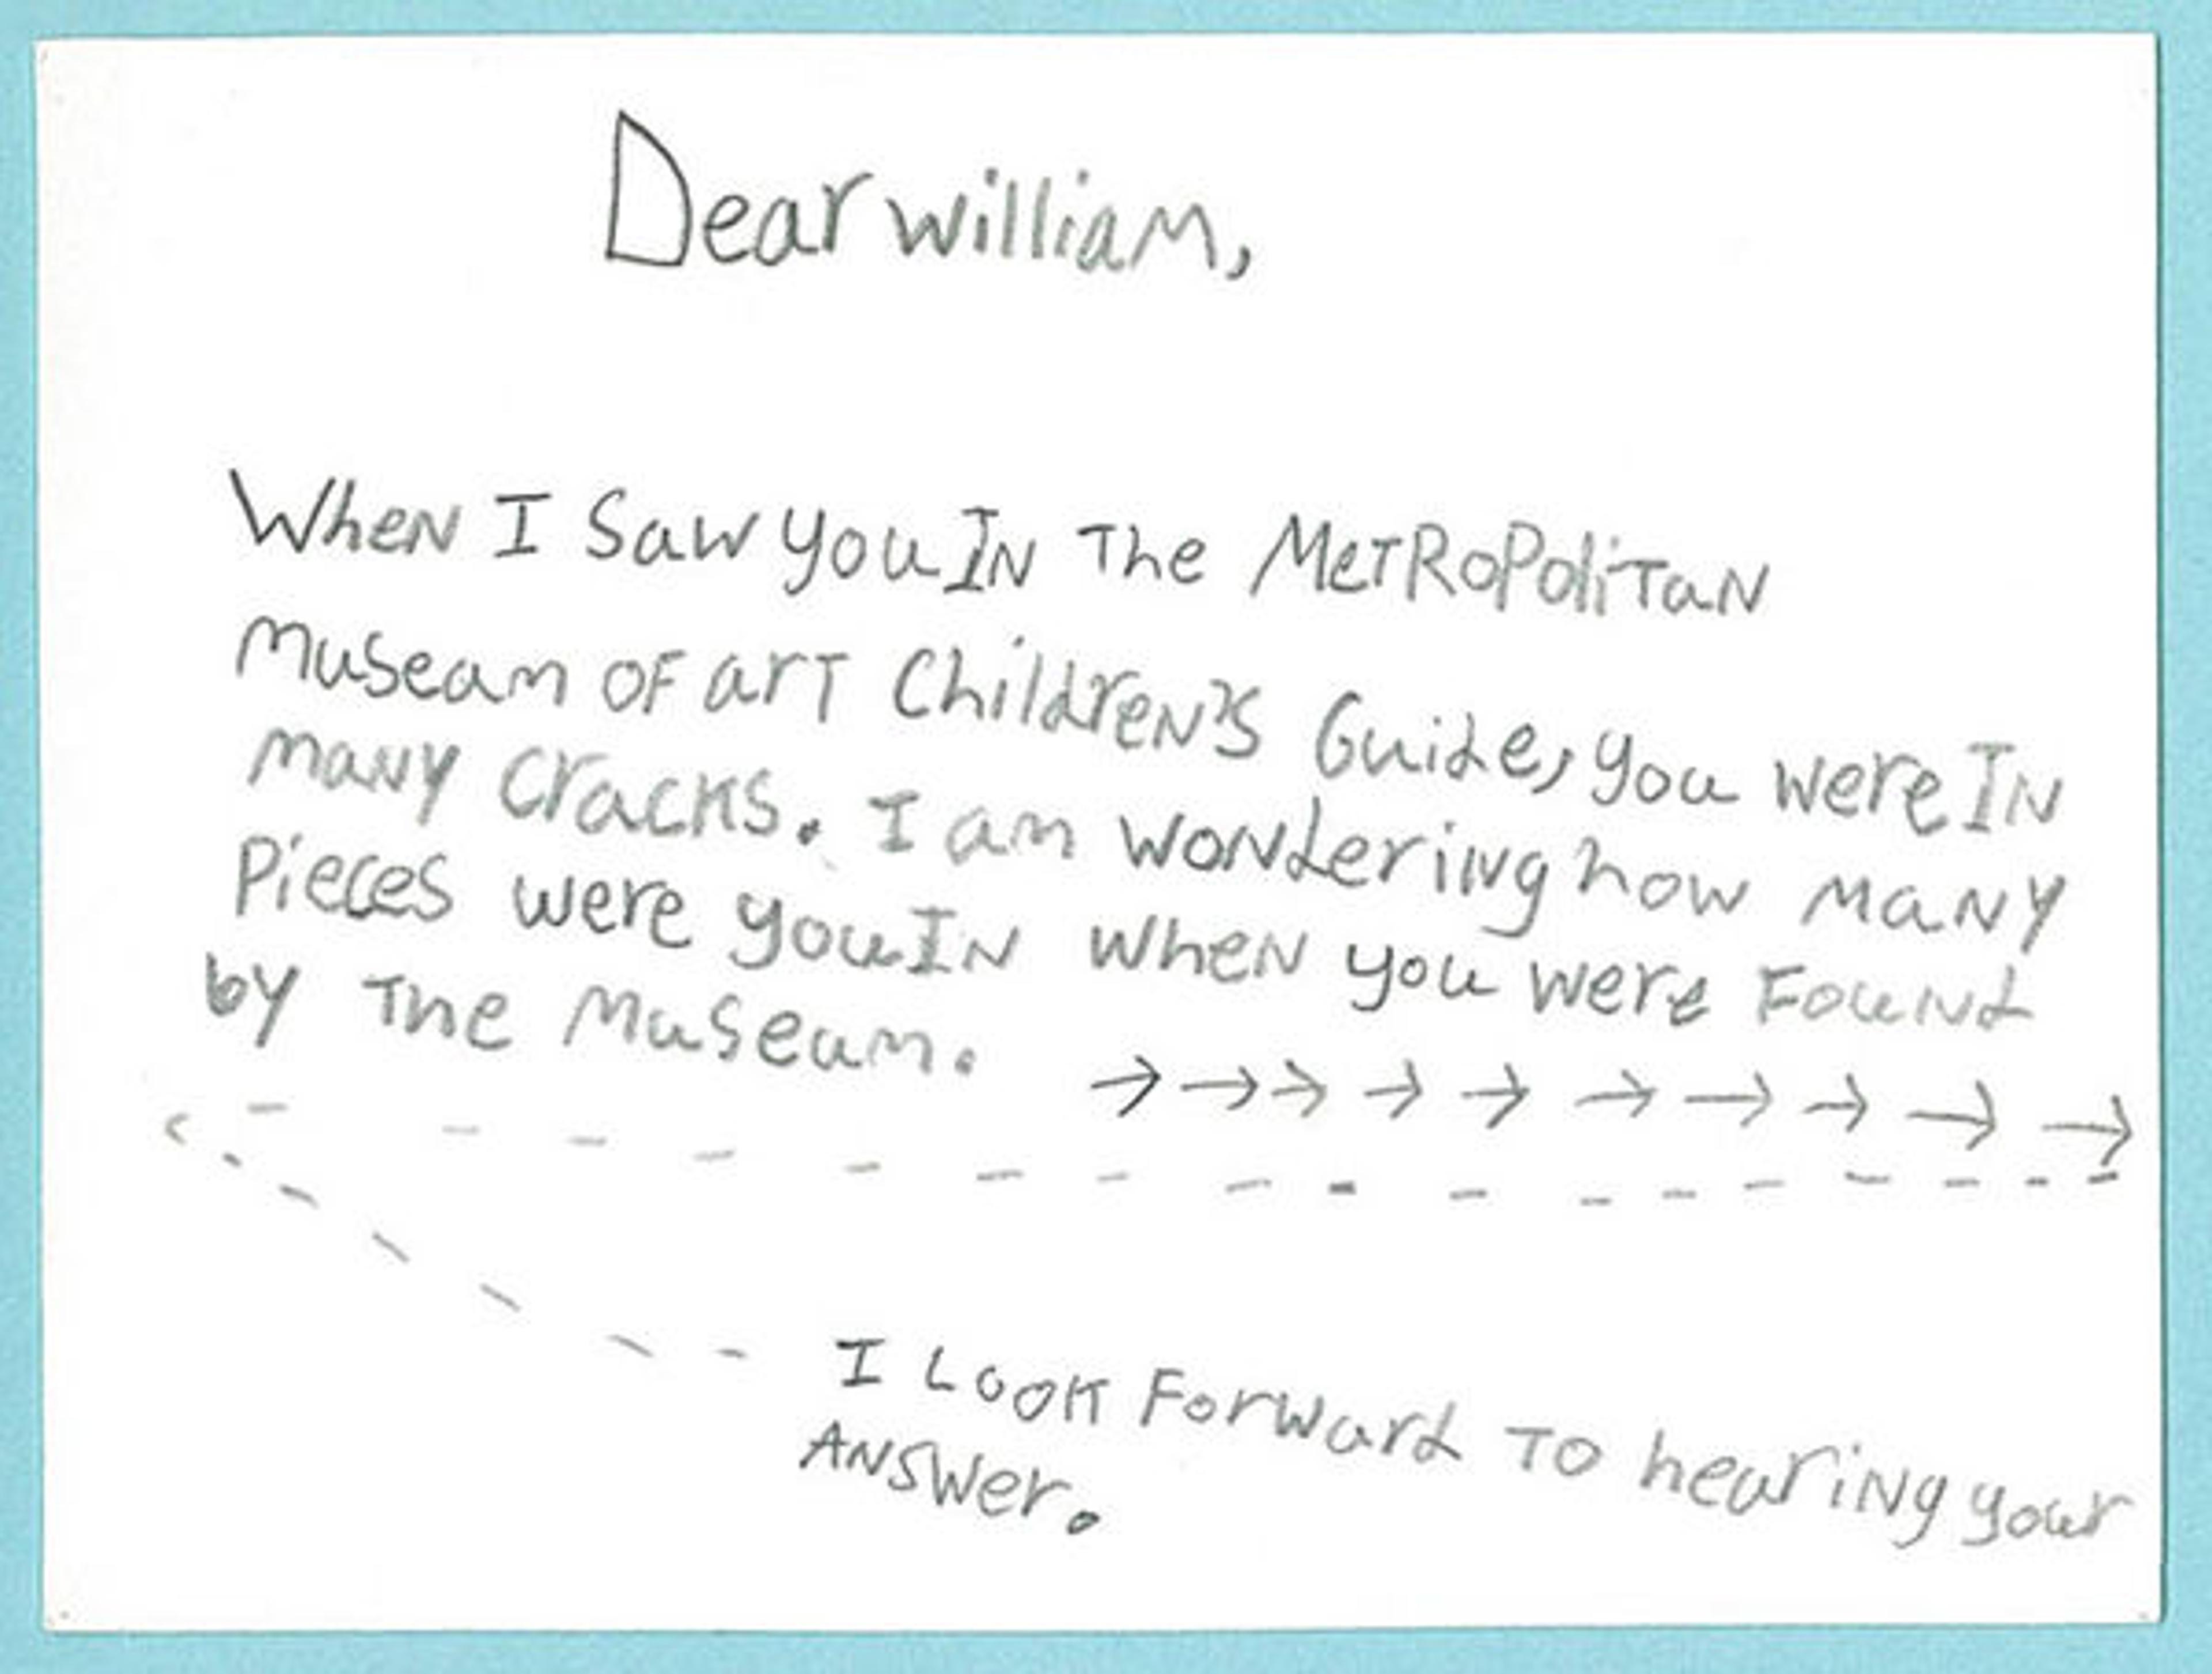 Eli's letter to William